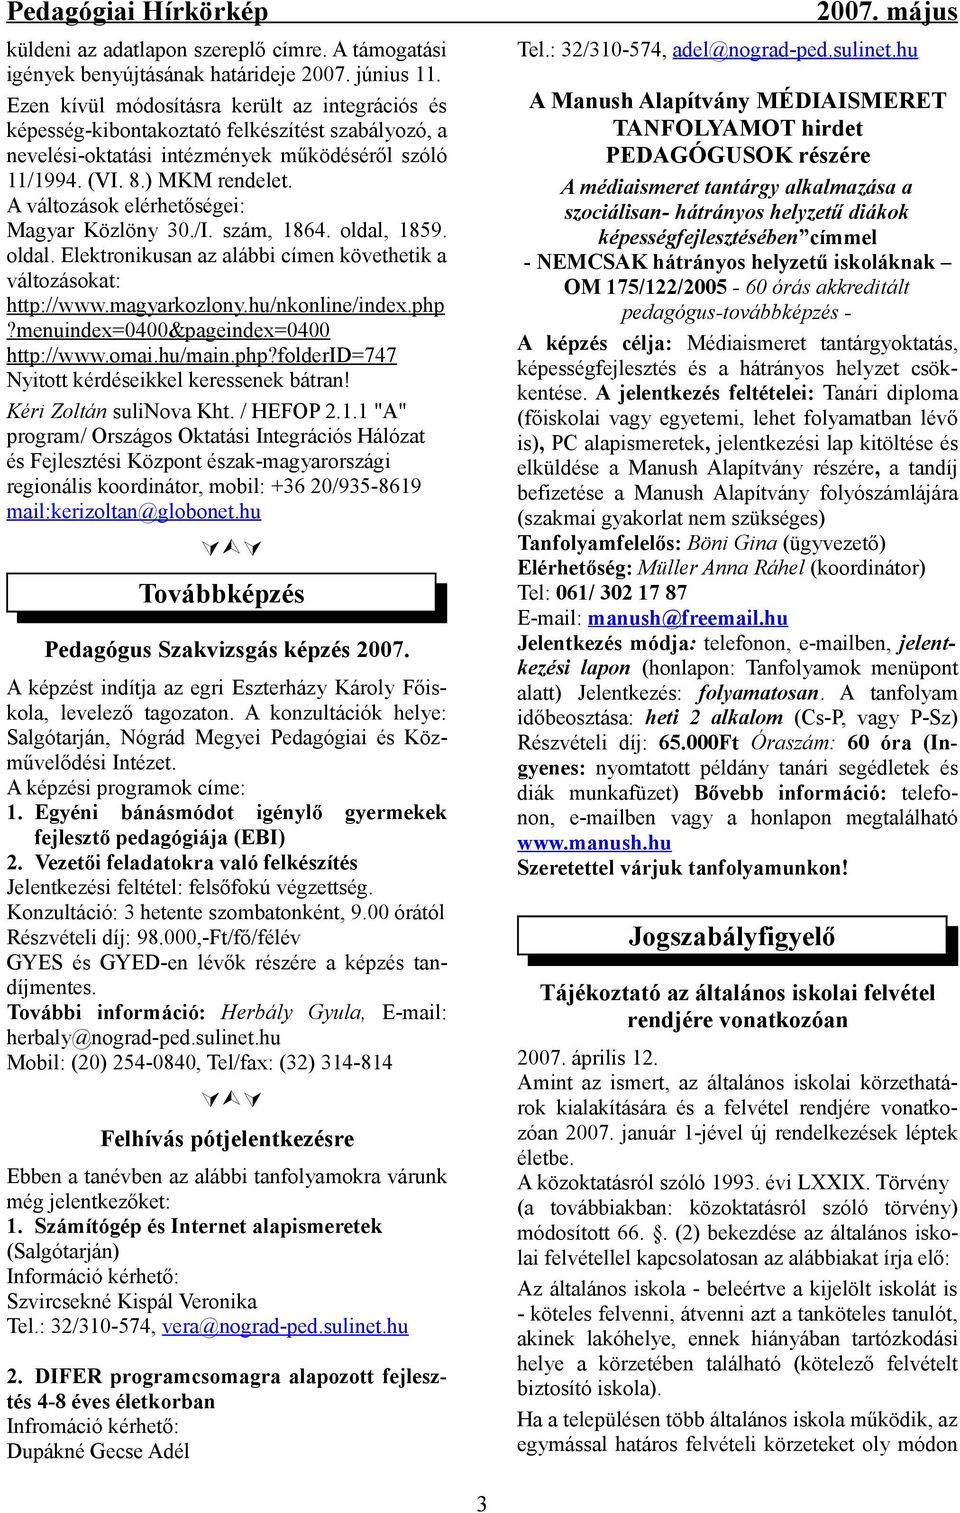 A változások elérhetőségei: Magyar Közlöny./I. szám, 1864. oldal, 1859. oldal. Elektronikusan az alábbi címen követhetik a változásokat: http://www.magyarkozlony.hu/nkonline/index.php?